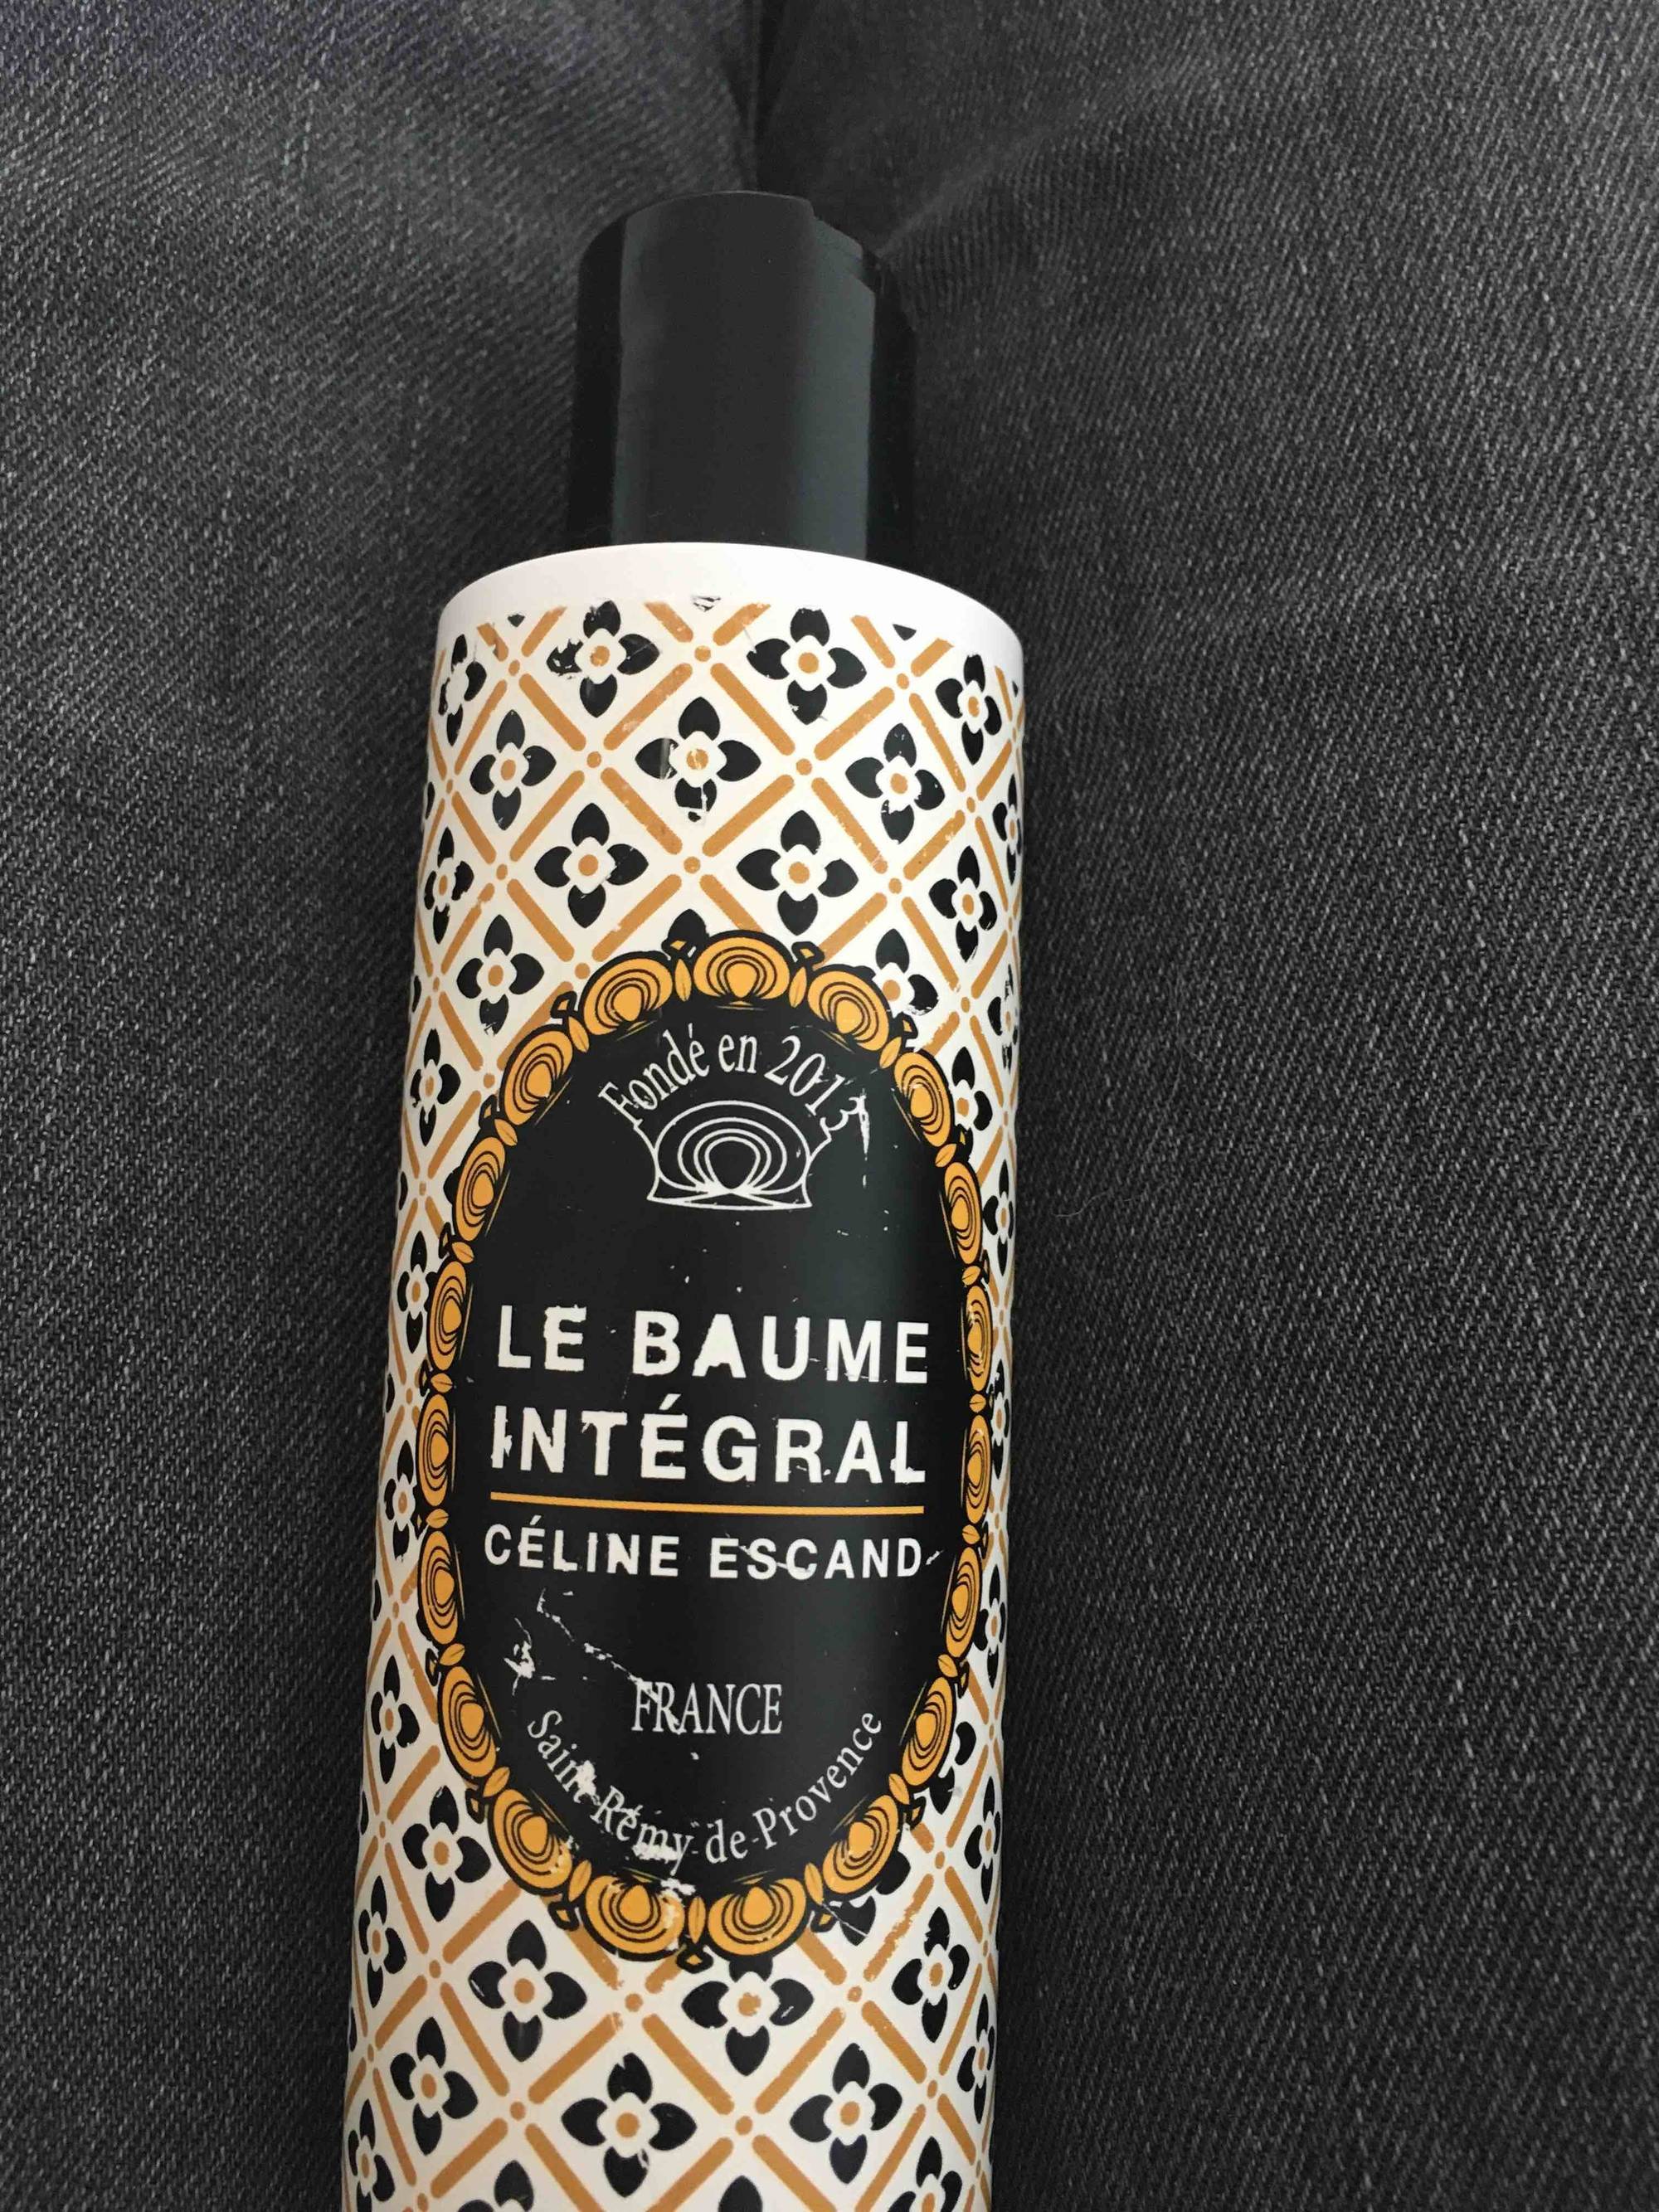 CÉLINE ESCAND - Le baume intégral